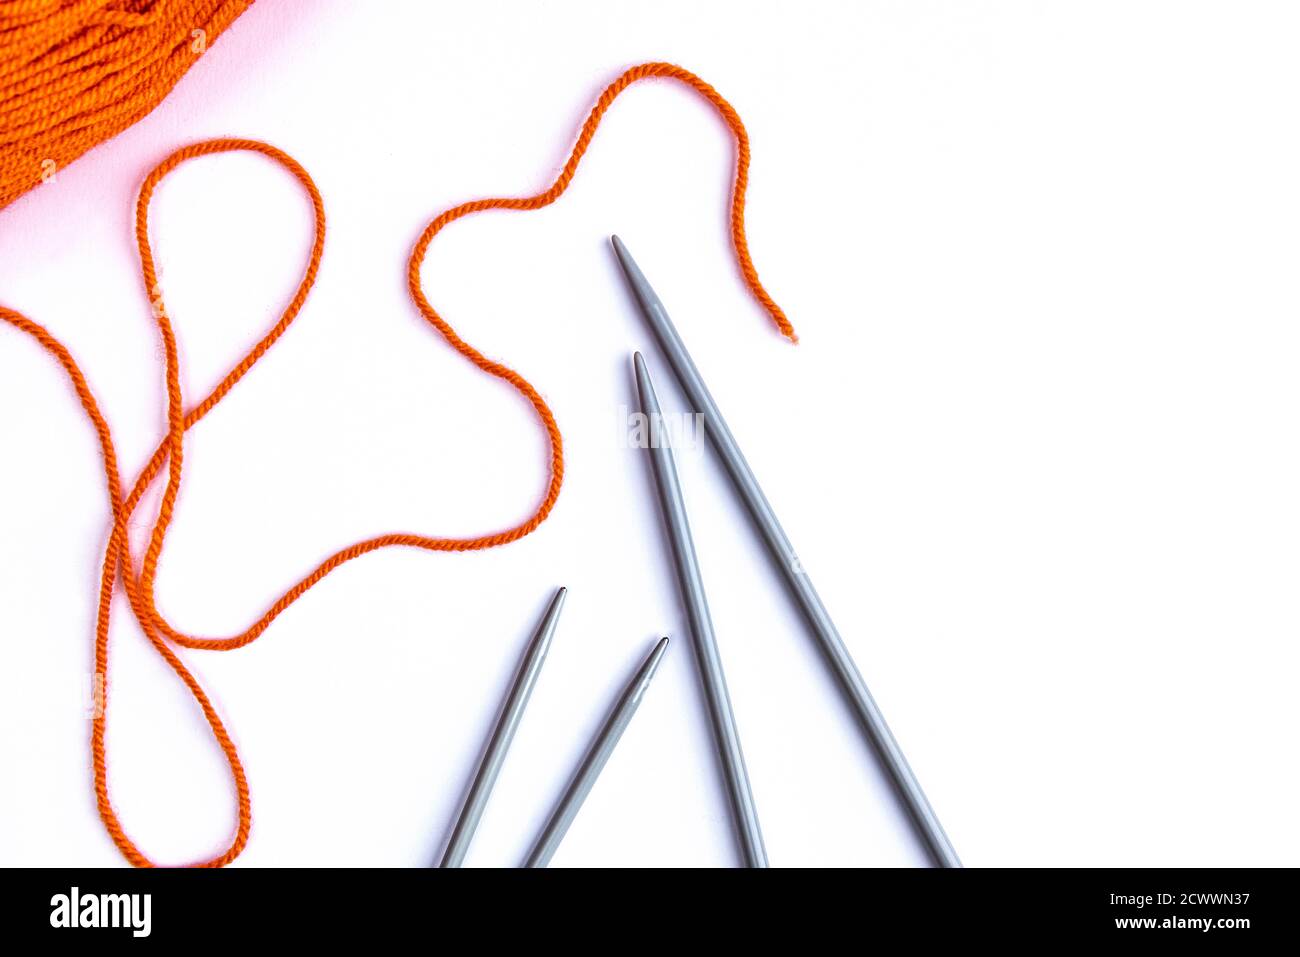 Knitting needles and orange wool on white background. Stock Photo